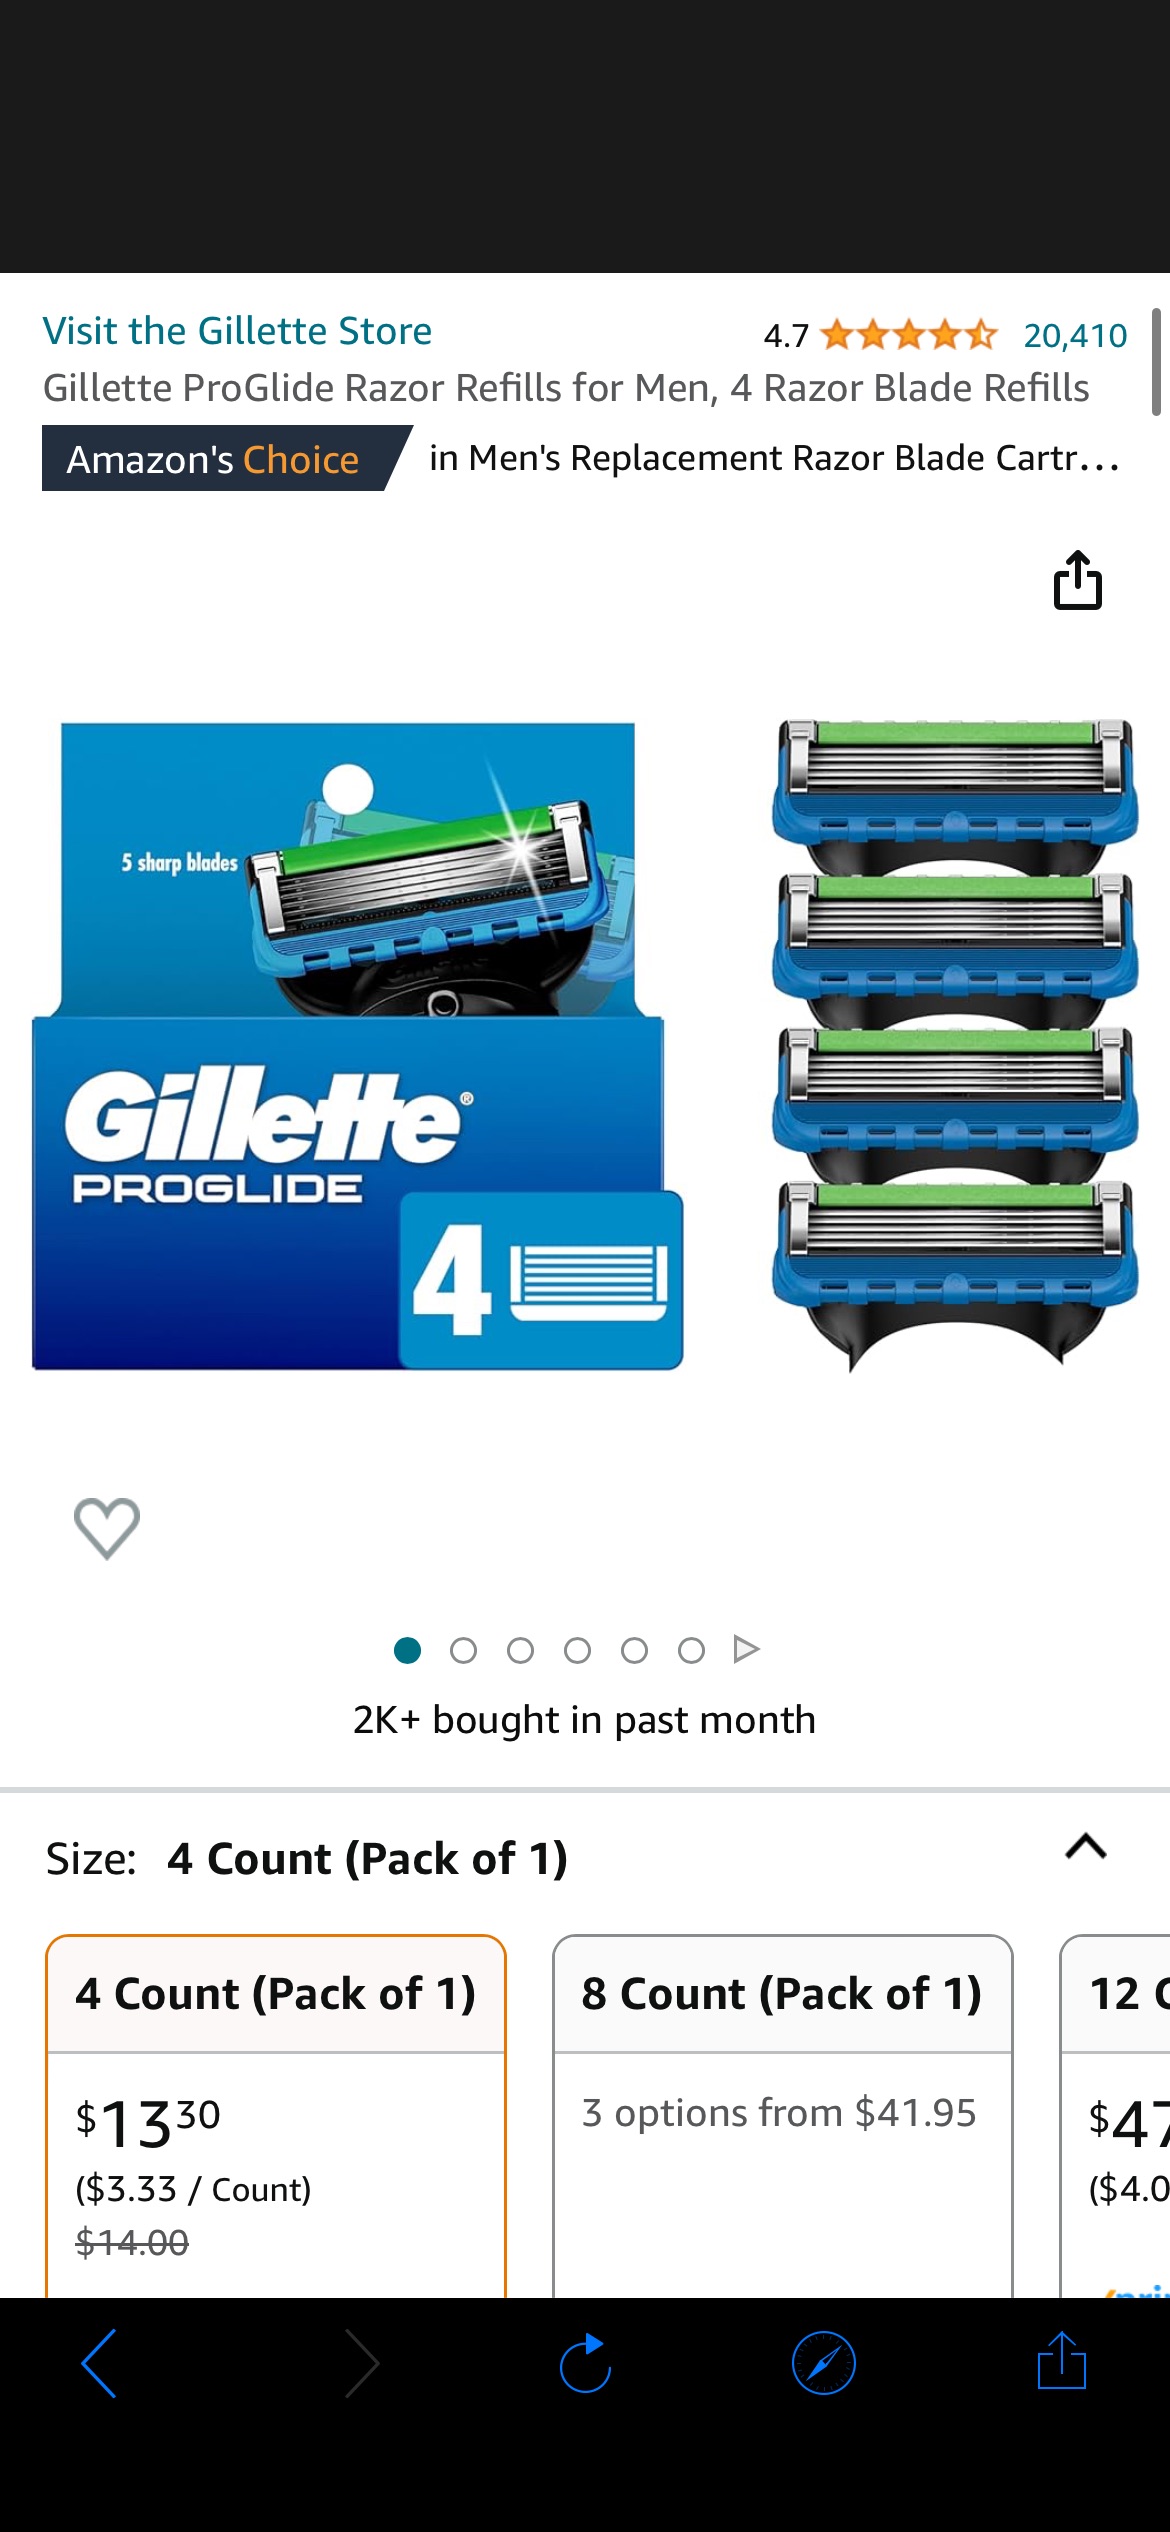 Amazon.com: Gillette ProGlide Razor Refills for Men, 4 Razor Blade Refills : Beauty & Personal Care